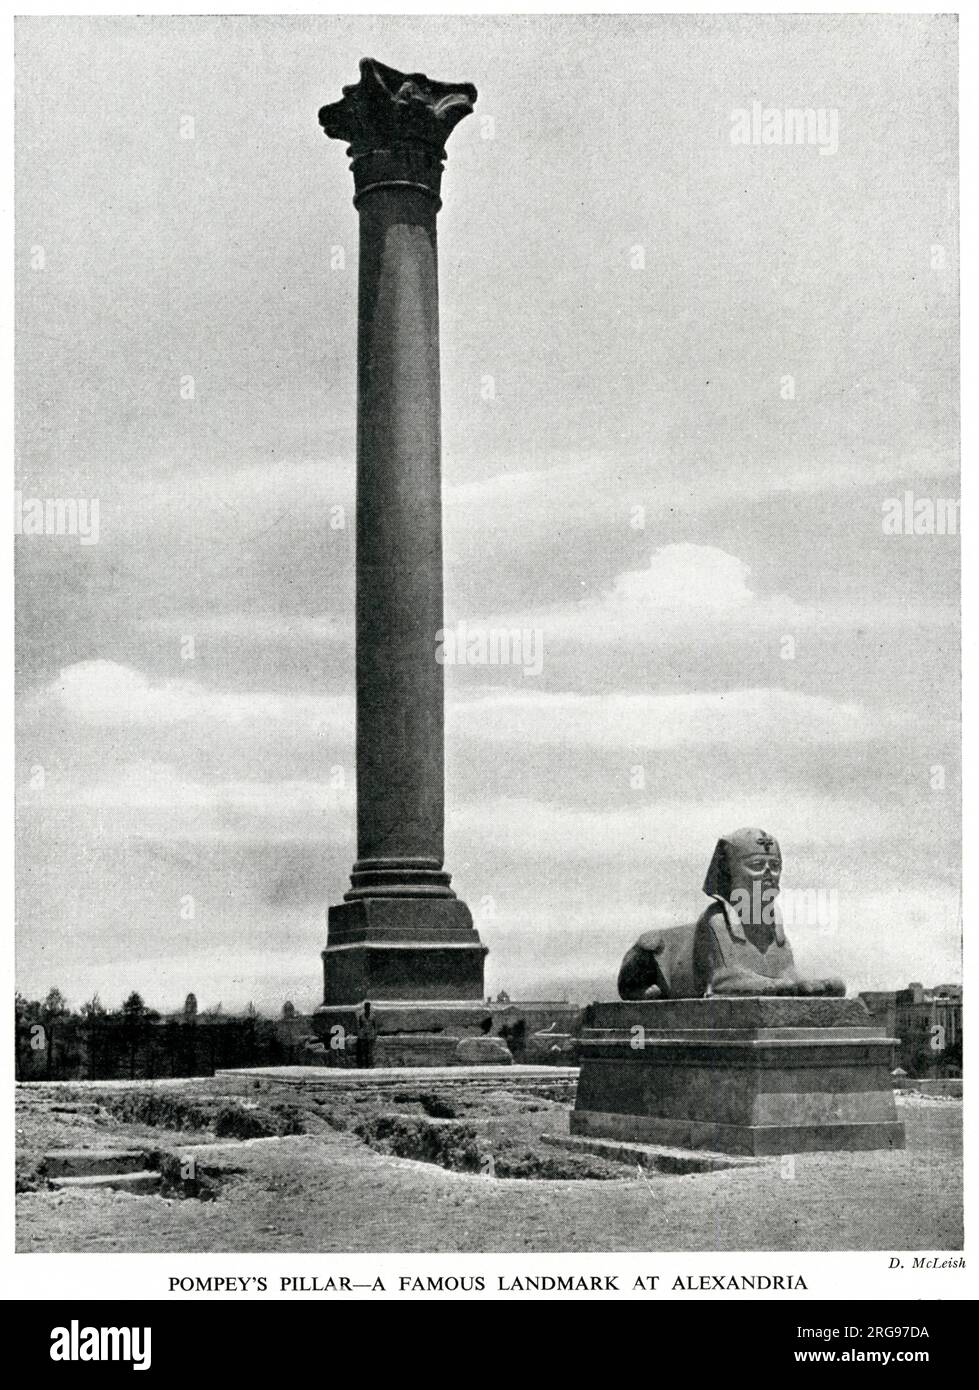 Pompeius's Pillar und Sphinx, Alexandria, Ägypten. Die Säule ist eine römische Triumphsäule, die 297 v. Chr. errichtet wurde, um dem Sieg des Kaisers Diokletian über eine Alexandrianische Revolte zu gedenken. Stockfoto